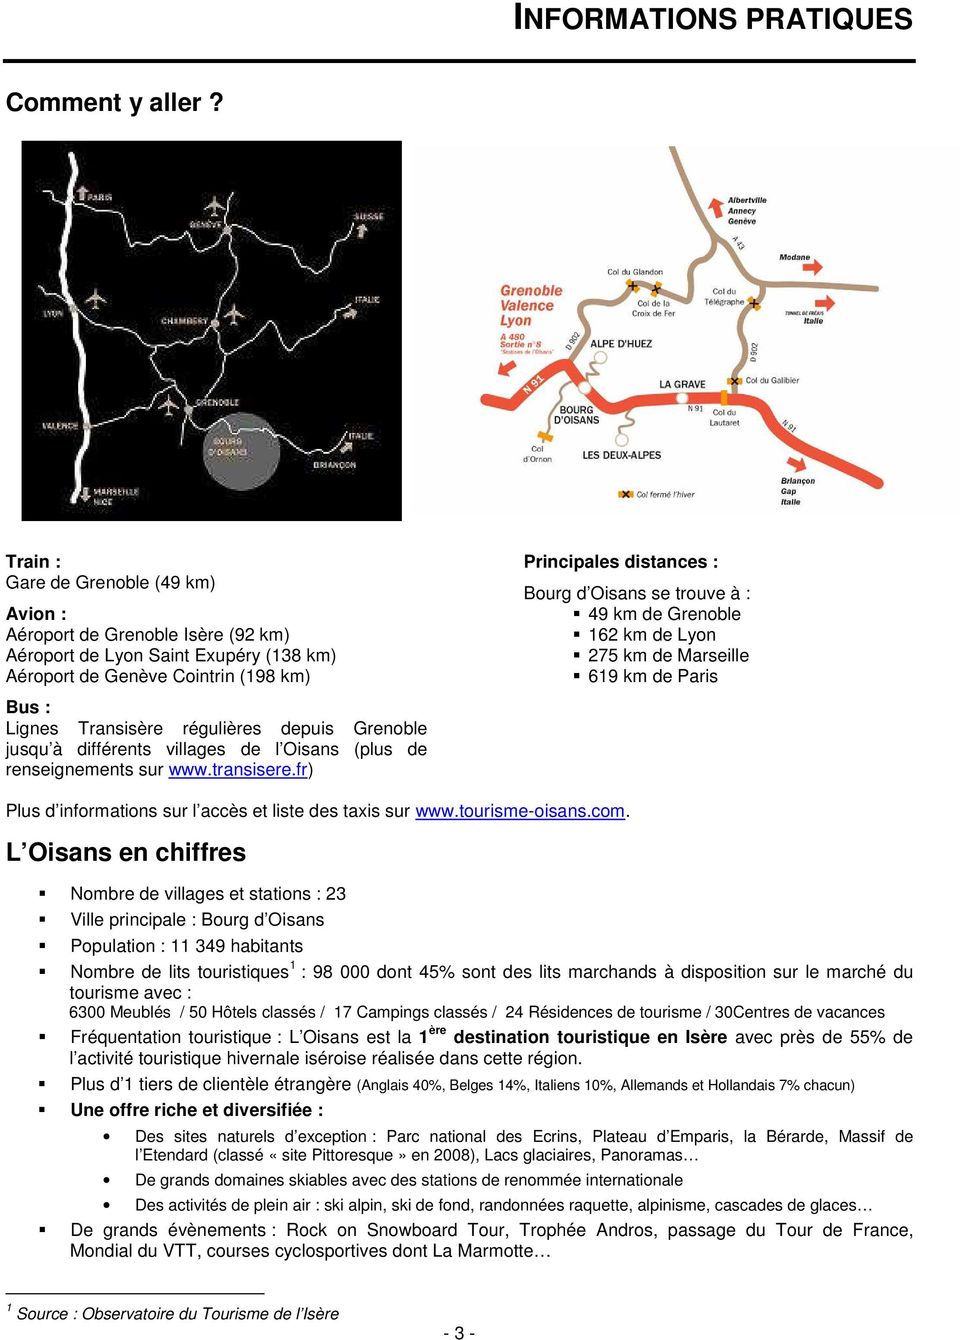 trouve à : 49 km de Grenoble 162 km de Lyon 275 km de Marseille 619 km de Paris Bus : Lignes Transisère régulières depuis Grenoble jusqu à différents villages de l Oisans (plus de renseignements sur